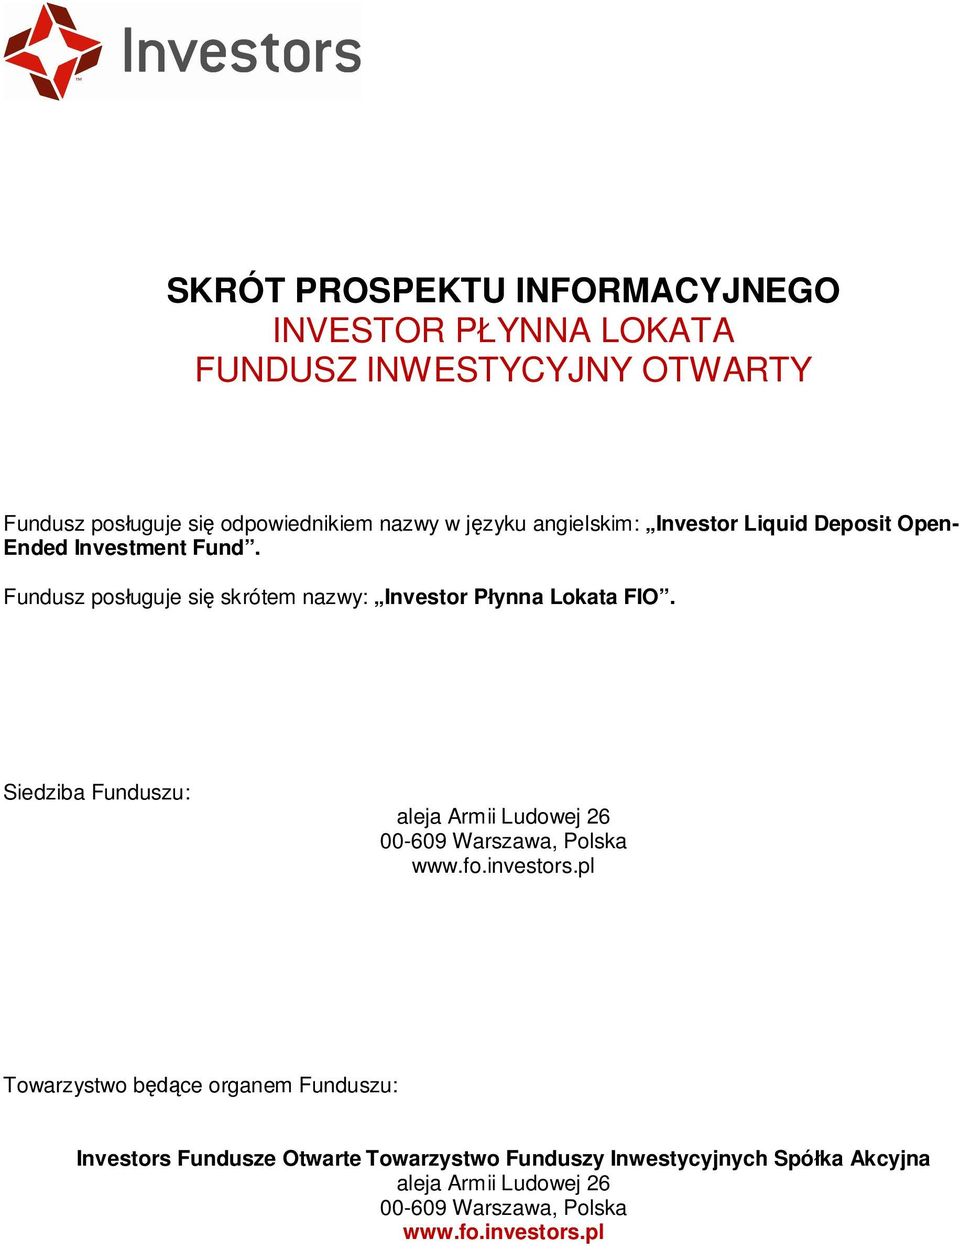 Fundusz pos uguje si skrótem nazwy: Investor P ynna Lokata FIO.